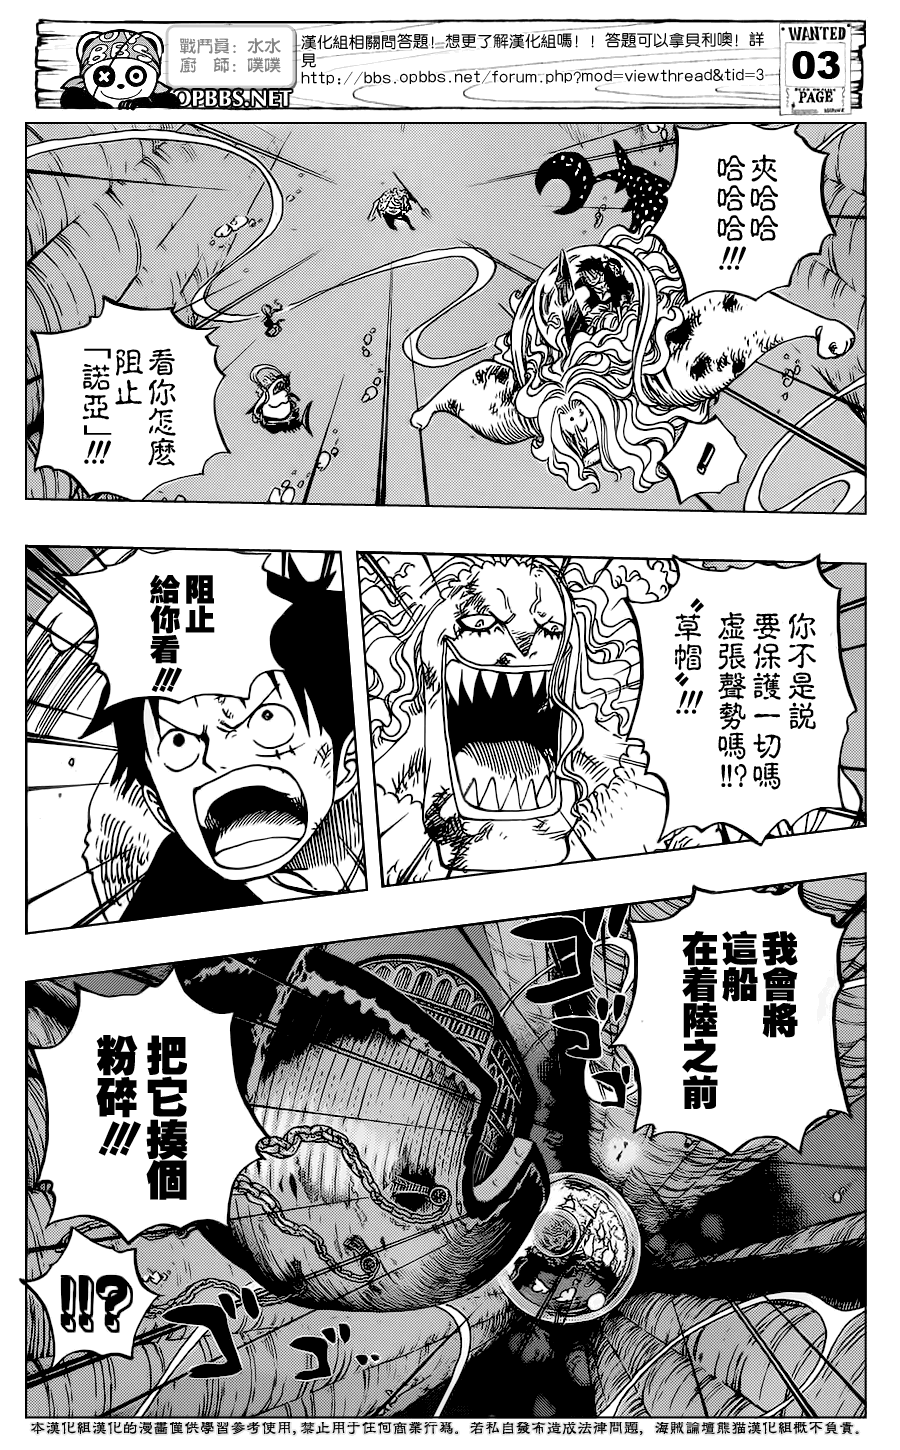 One Piece Manga 641 Spoiler  7qmzwgc9